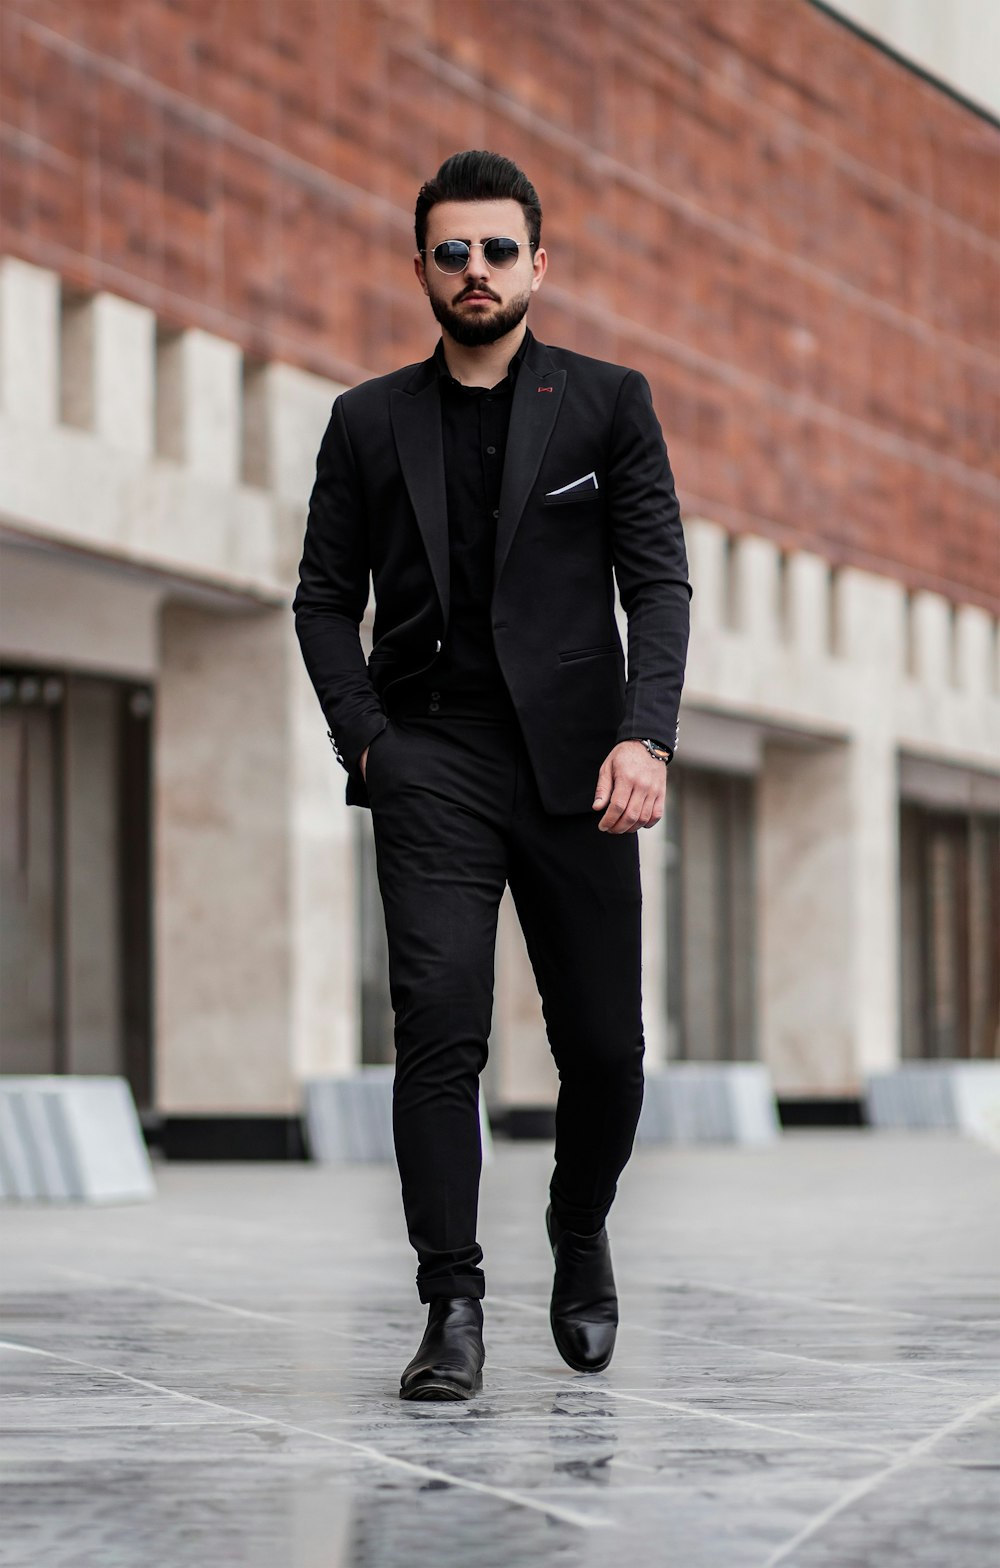 Mann in schwarzer Anzugjacke und schwarzer Hose, der tagsüber auf grauem Betonboden steht